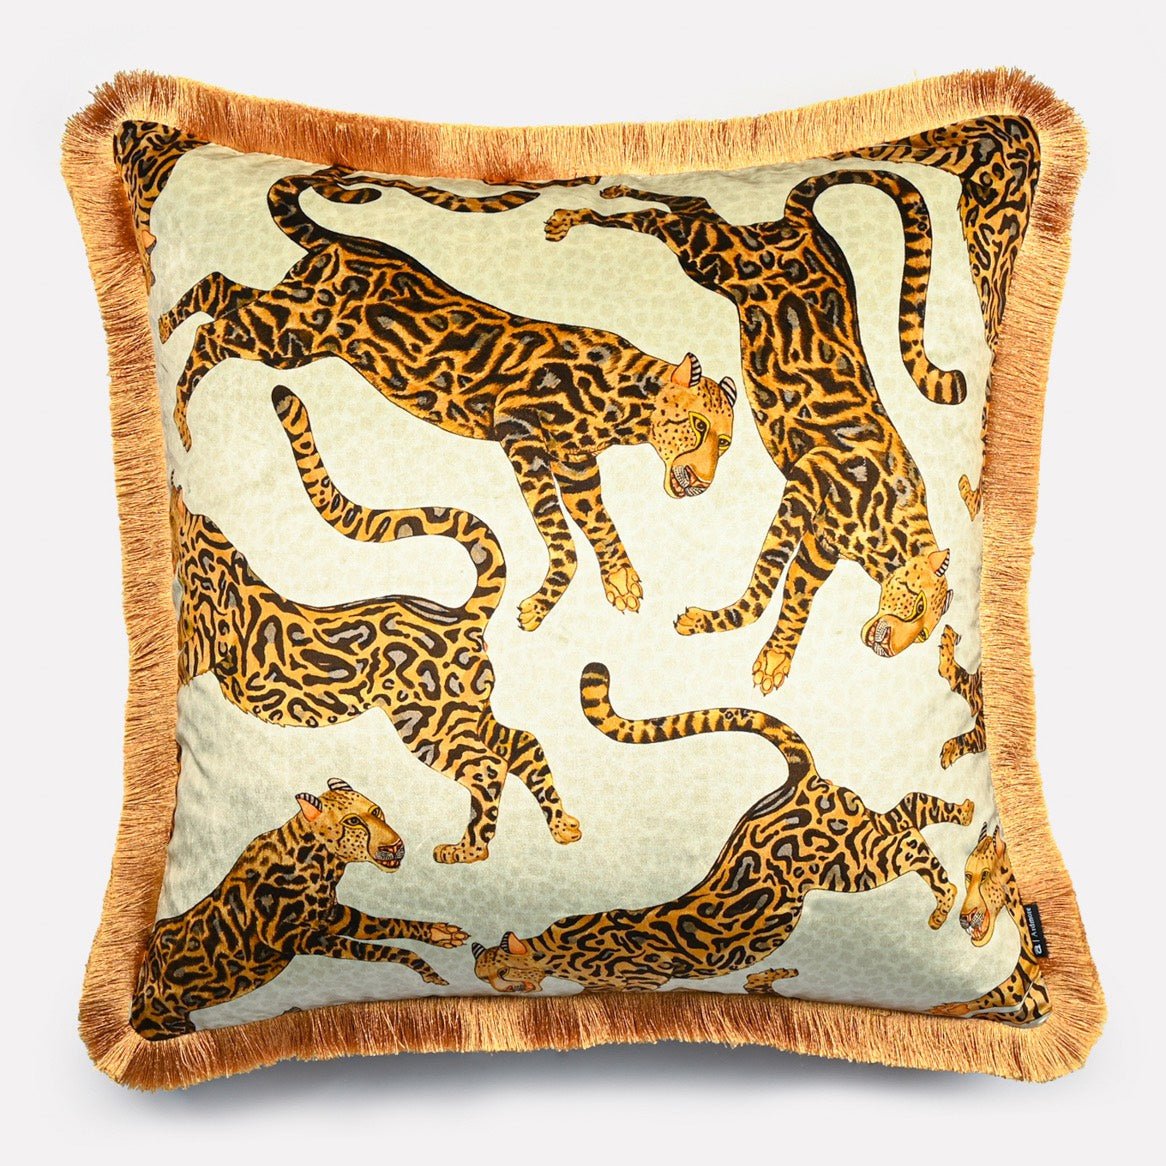 Cheetah Kings Stone Velvet Cushion Cover with Fringe